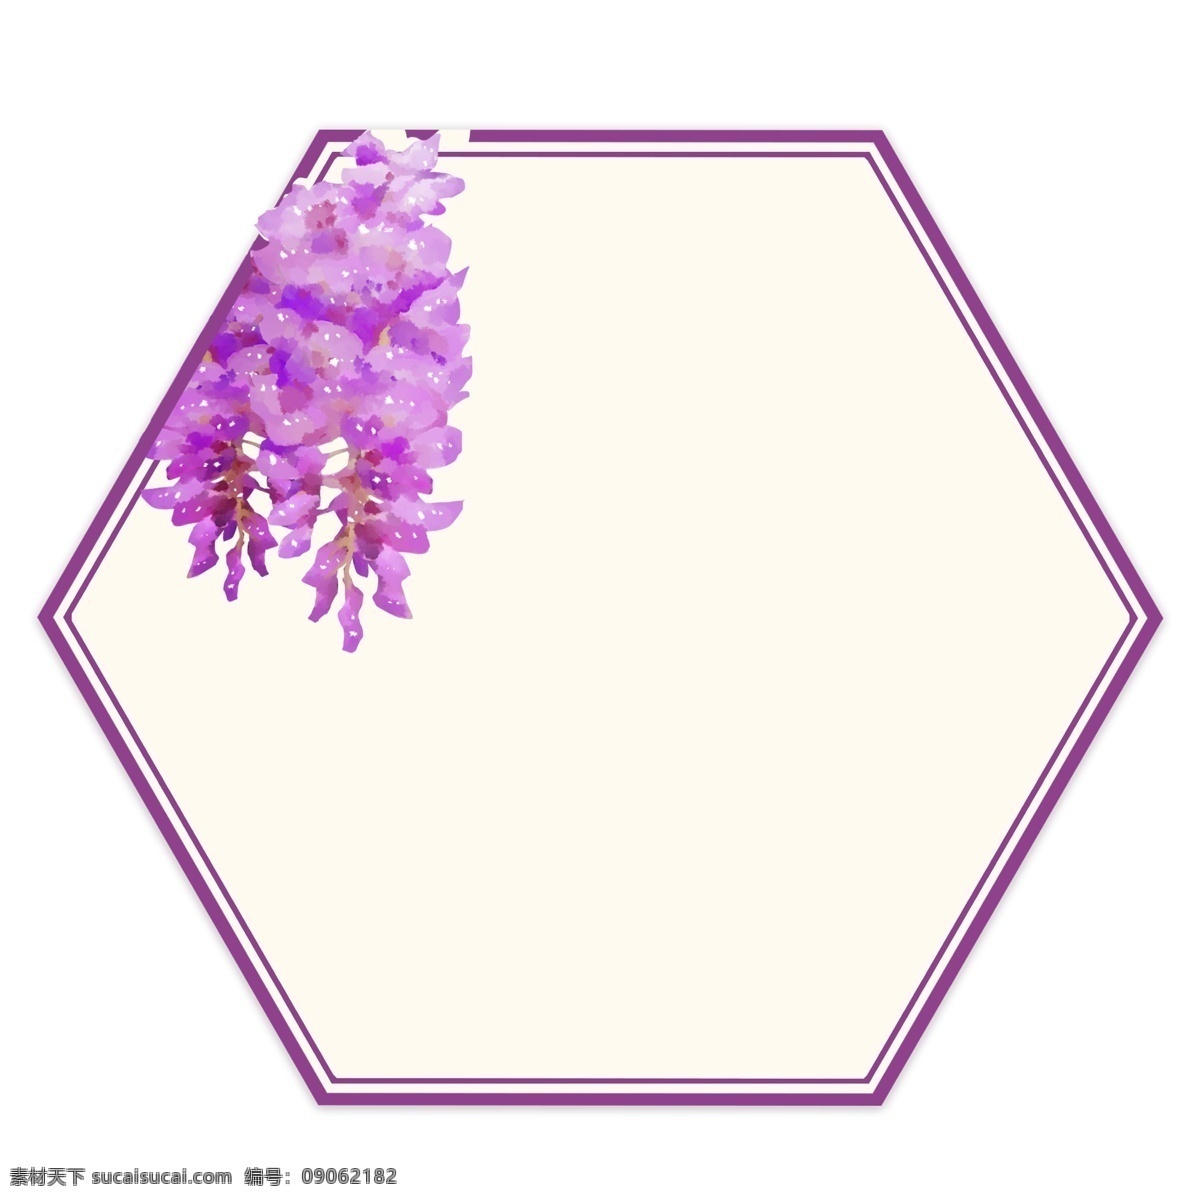 植物 紫色 花 装饰 框 插画 紫色花边框 手绘 五边形 边框 花朵 边框插图 手绘文本框